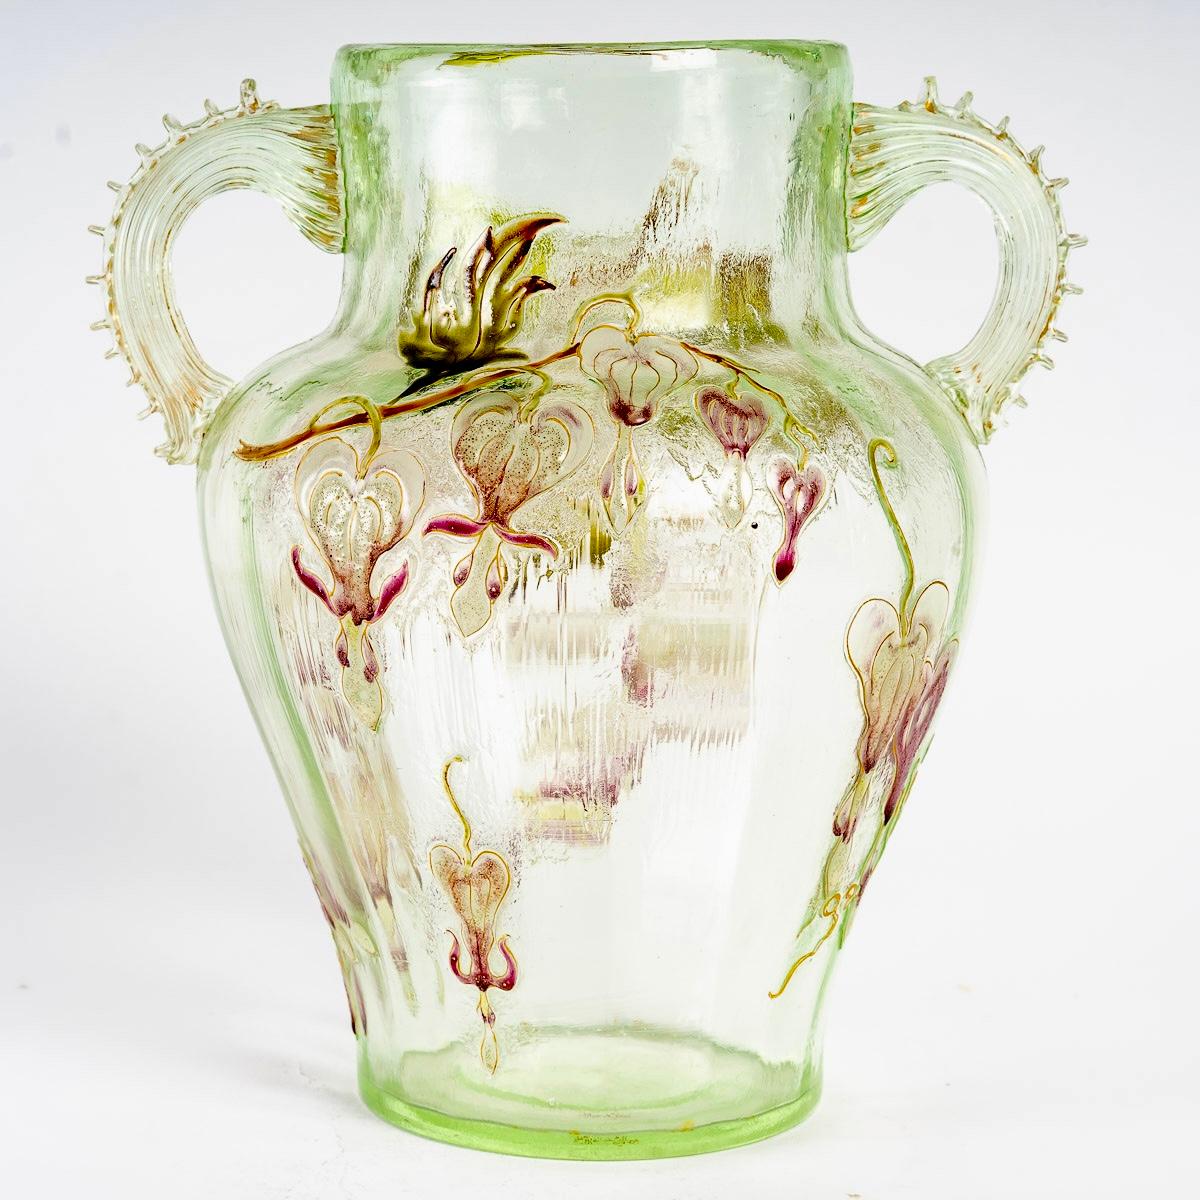 Molded 1890 Emile Gallé - Vase Cristallerie Handles Light Green Glass Enameled Flowers